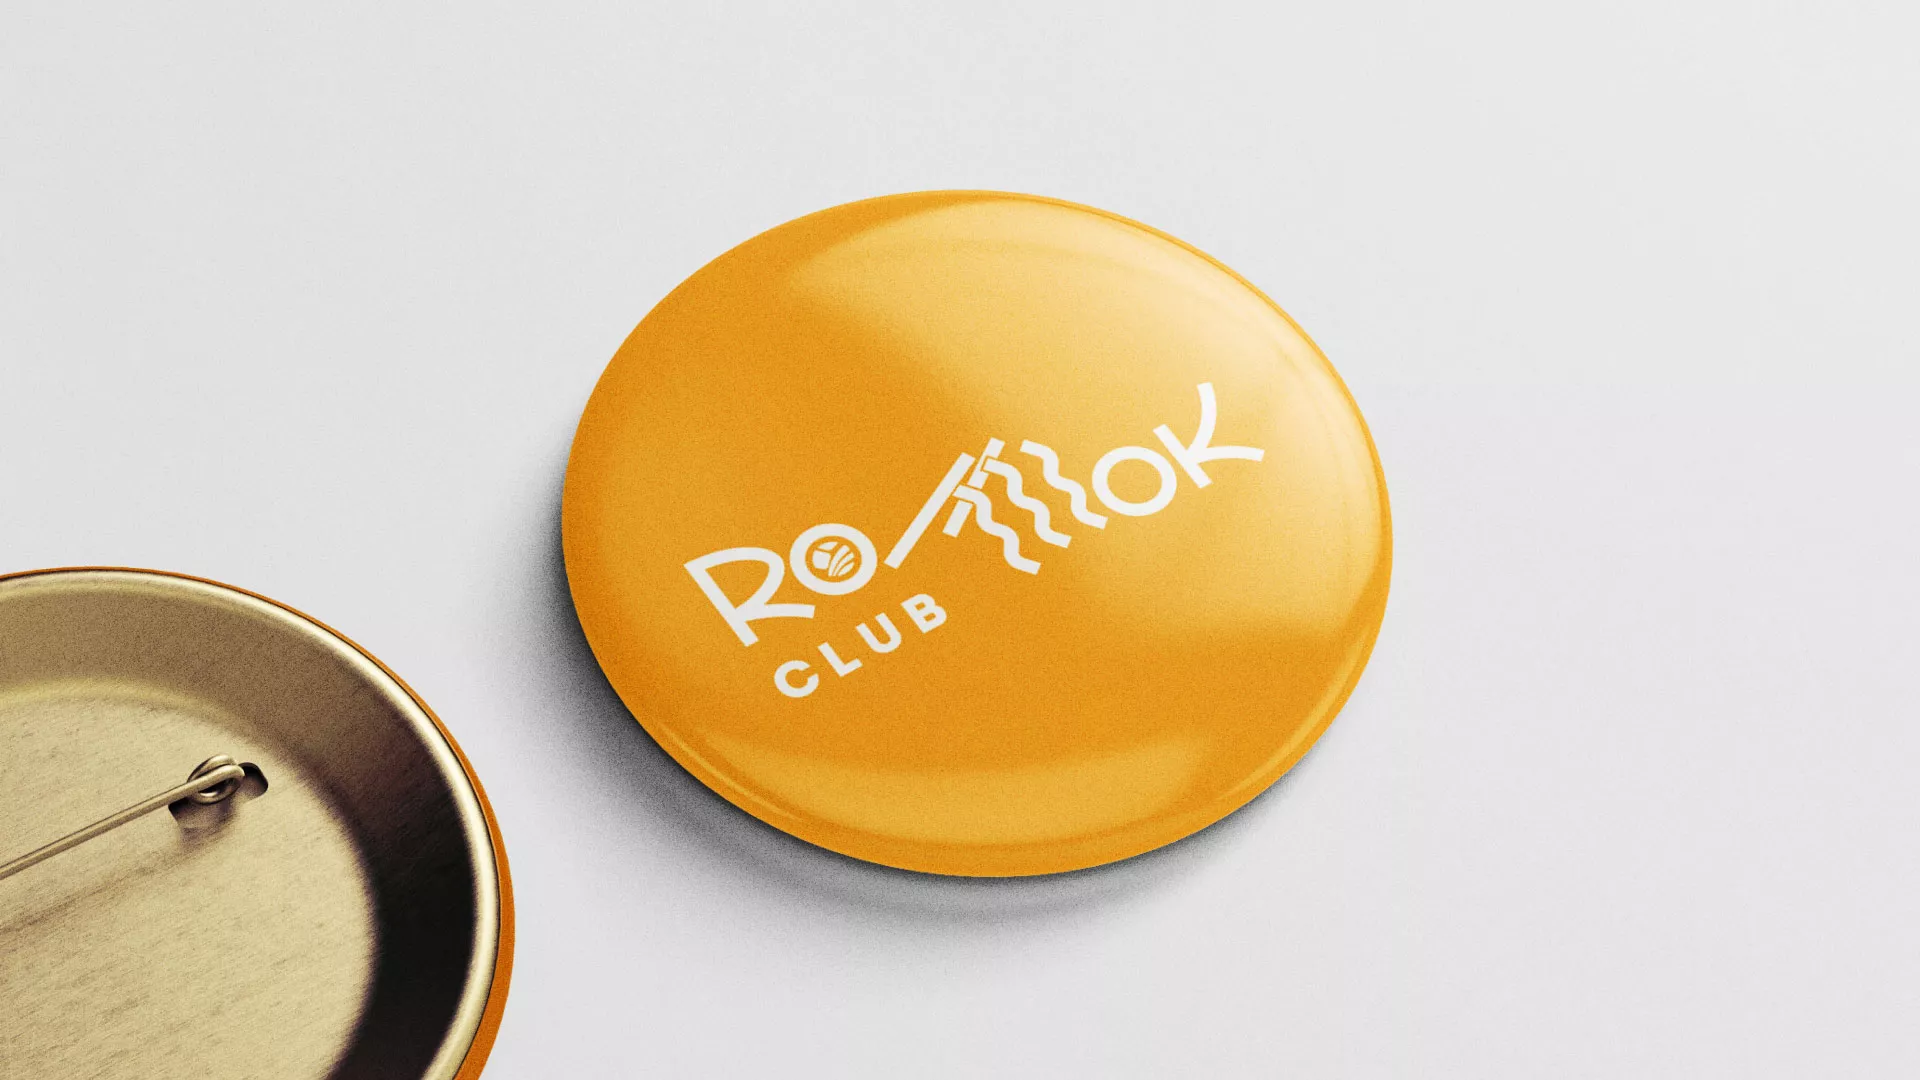 Создание логотипа суши-бара «Roll Wok Club» в Юрьев-Польском